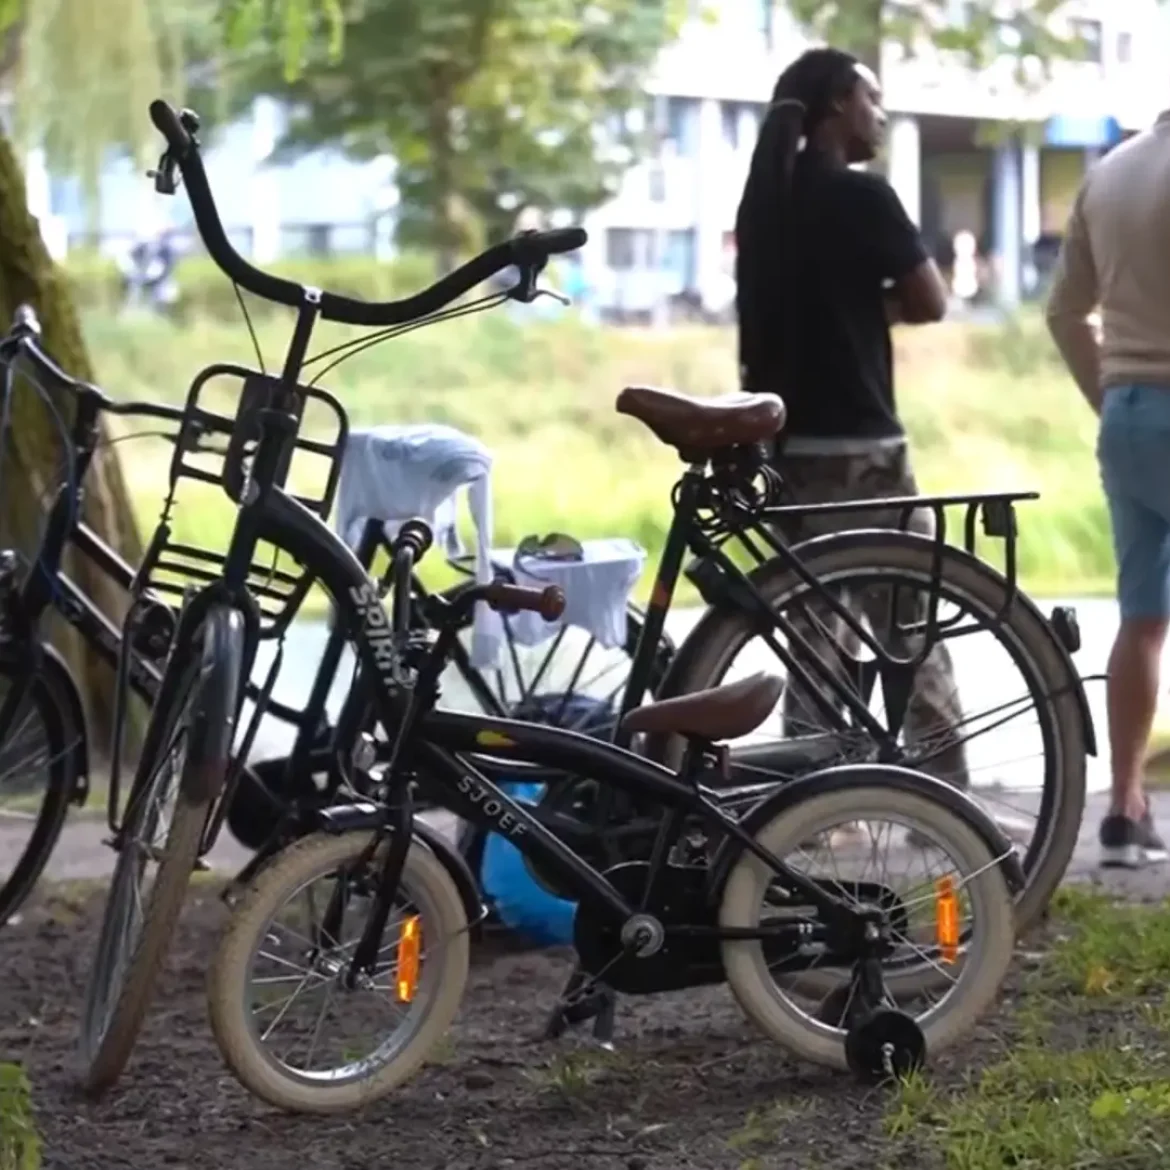 De twee fietsen in Deventer, waar op de achtergrond de vrouw wordt bevrijd door de brandweer